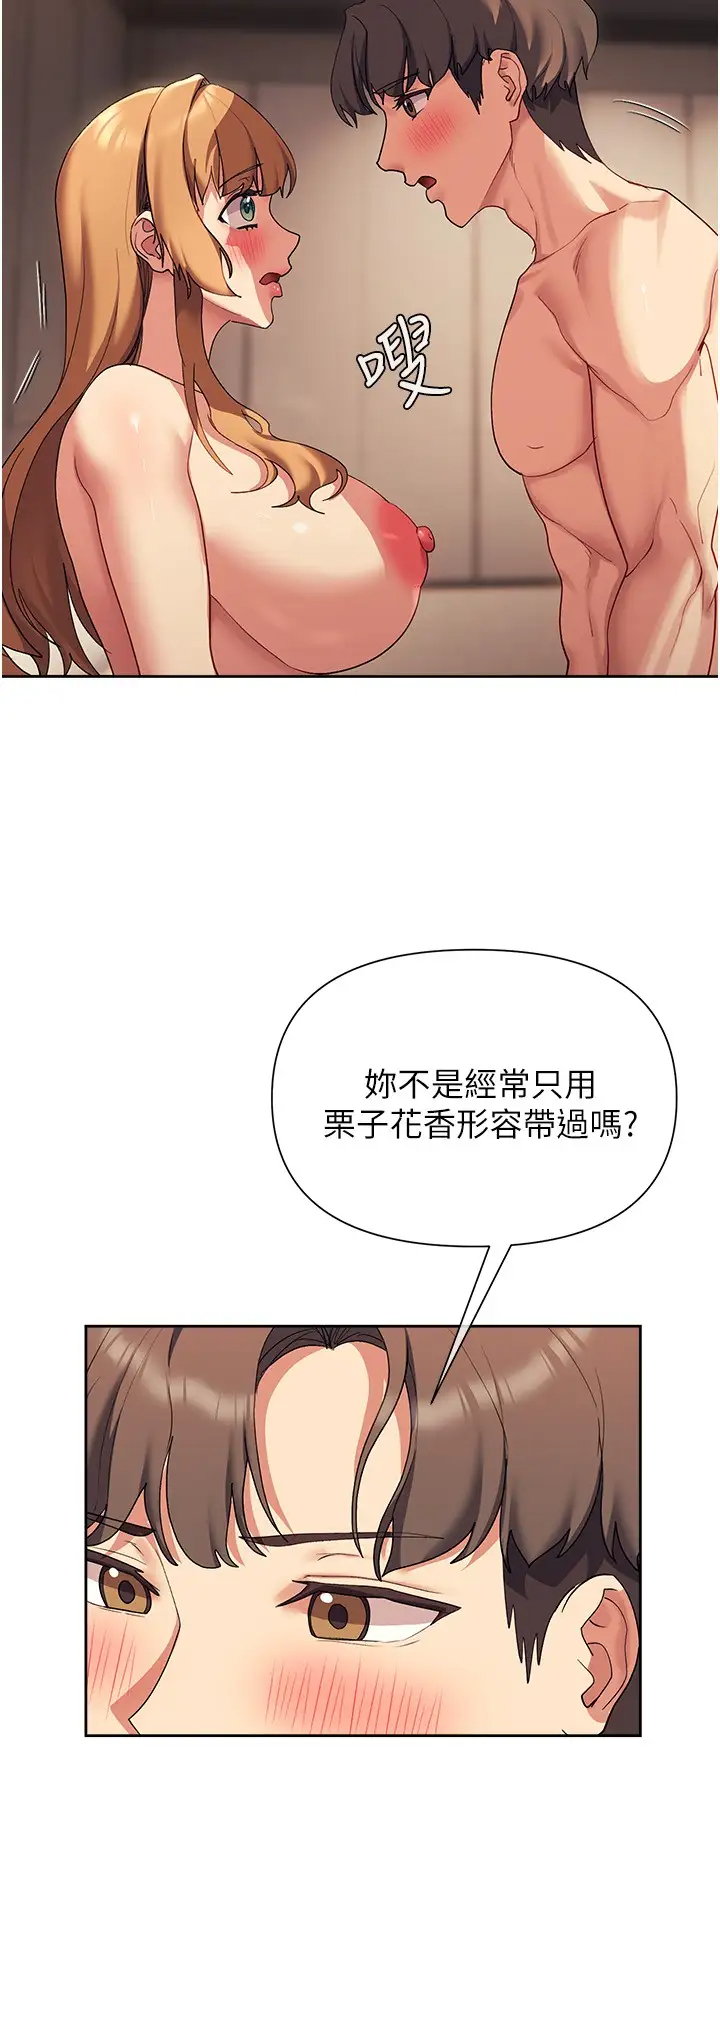 韩国污漫画 現上教學 第18话放荡淫叫的夏妮 29